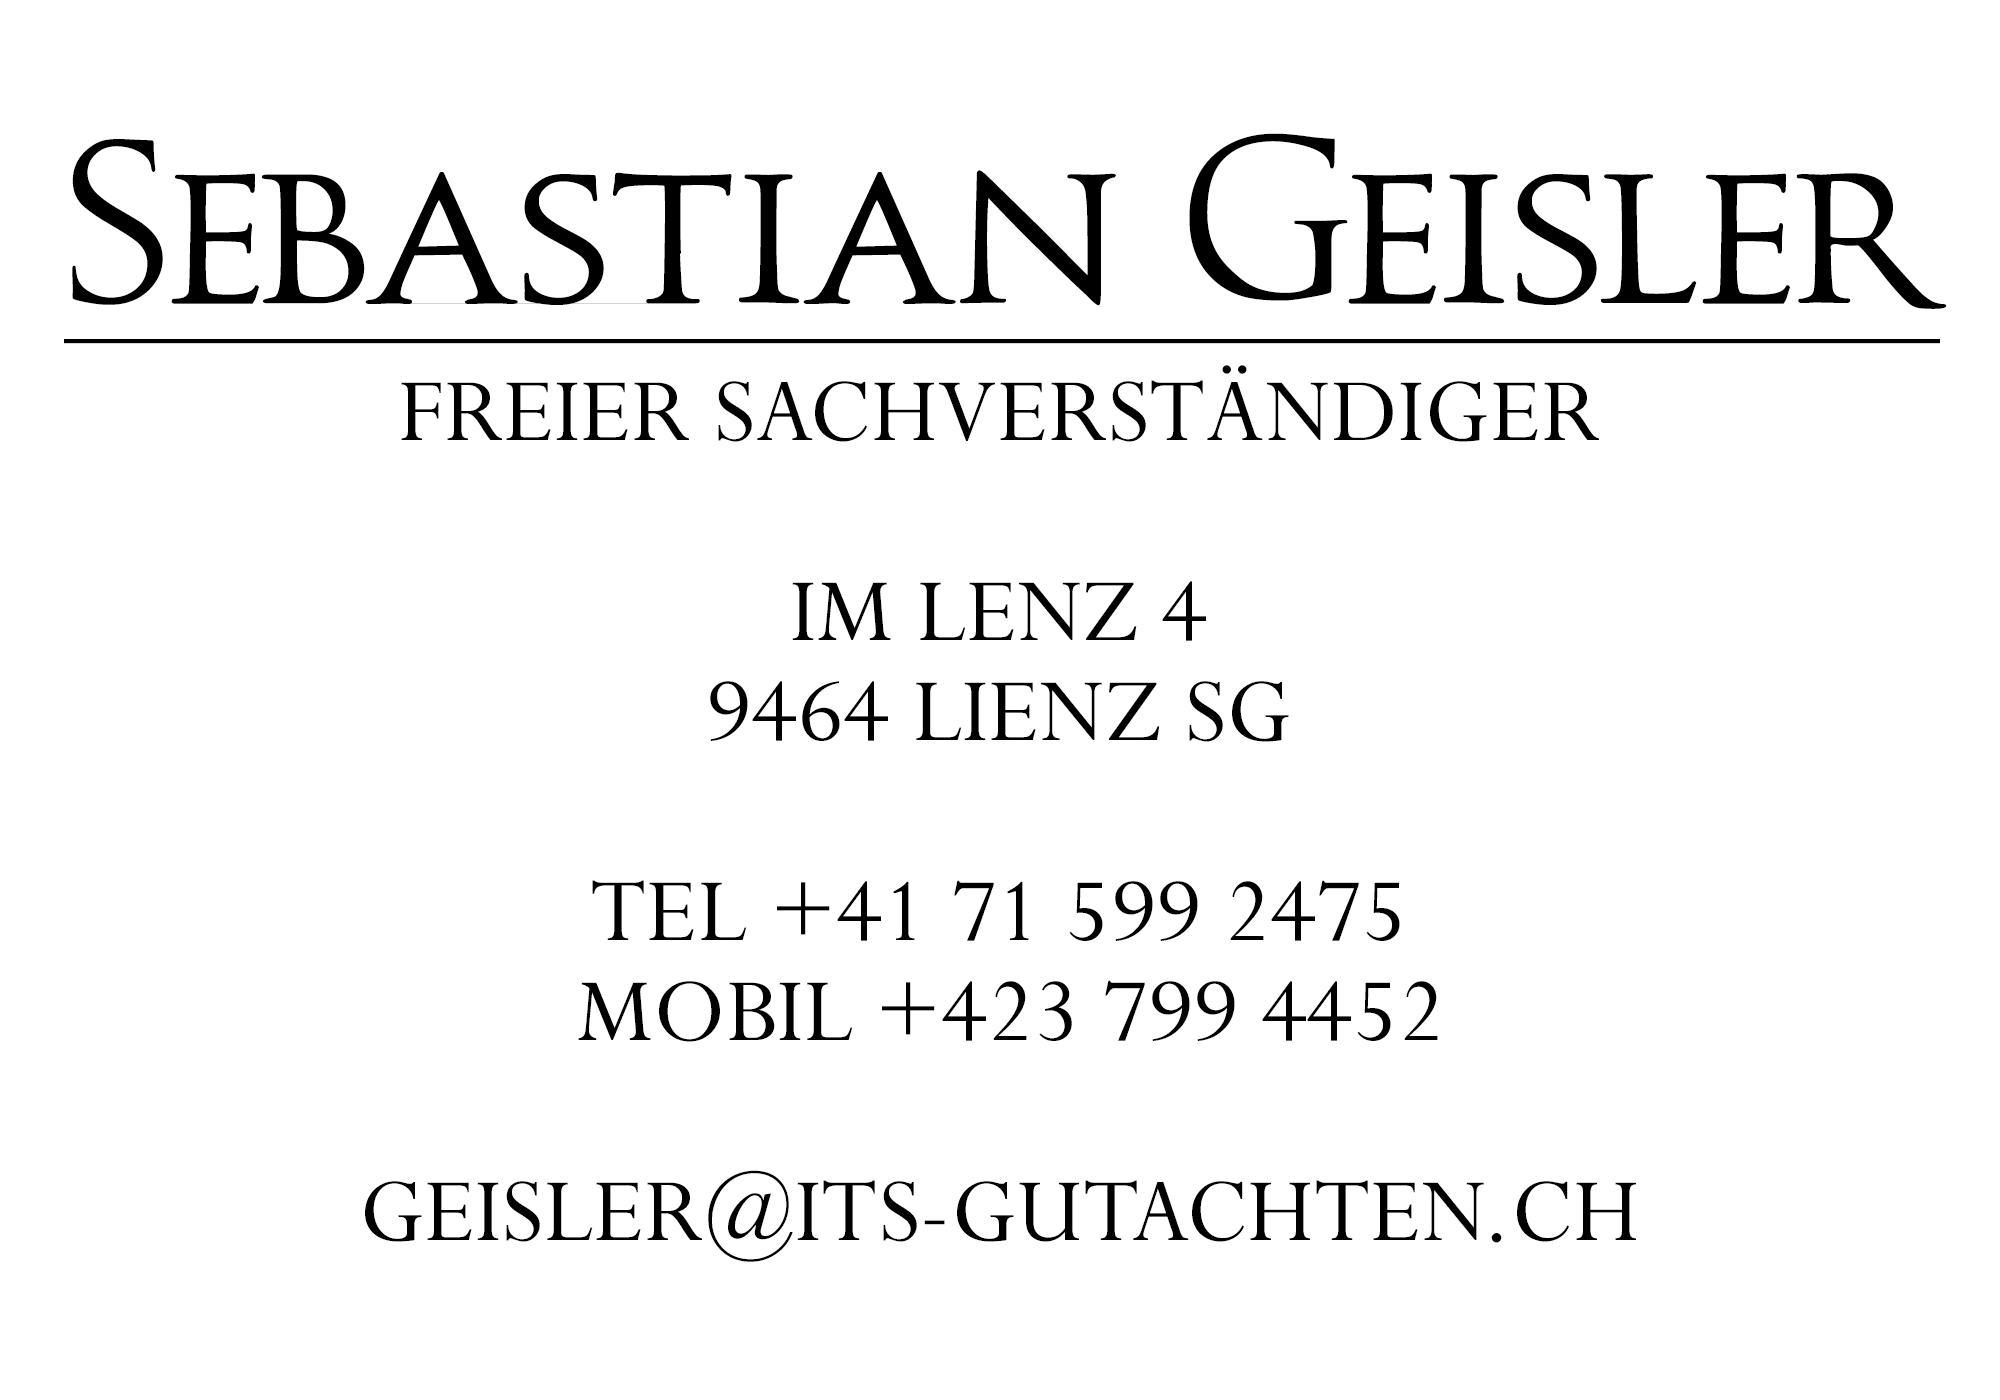 Sebastian Geisler, geisler@its-gutachten.ch